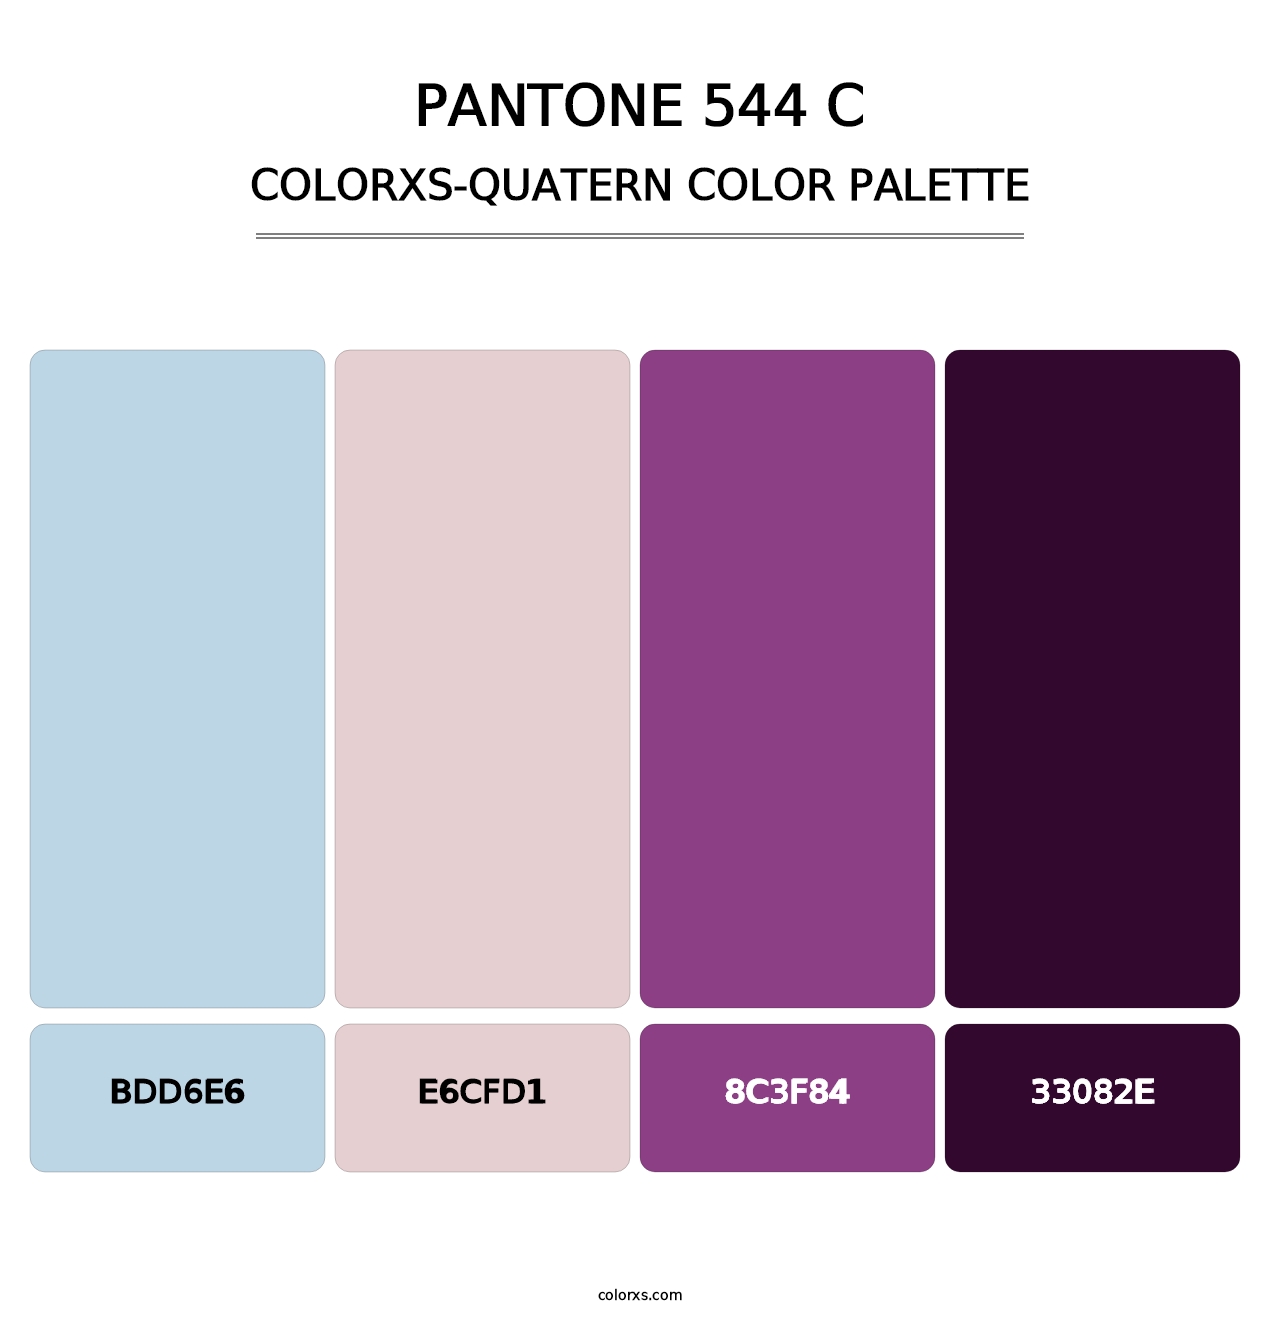 PANTONE 544 C - Colorxs Quatern Palette